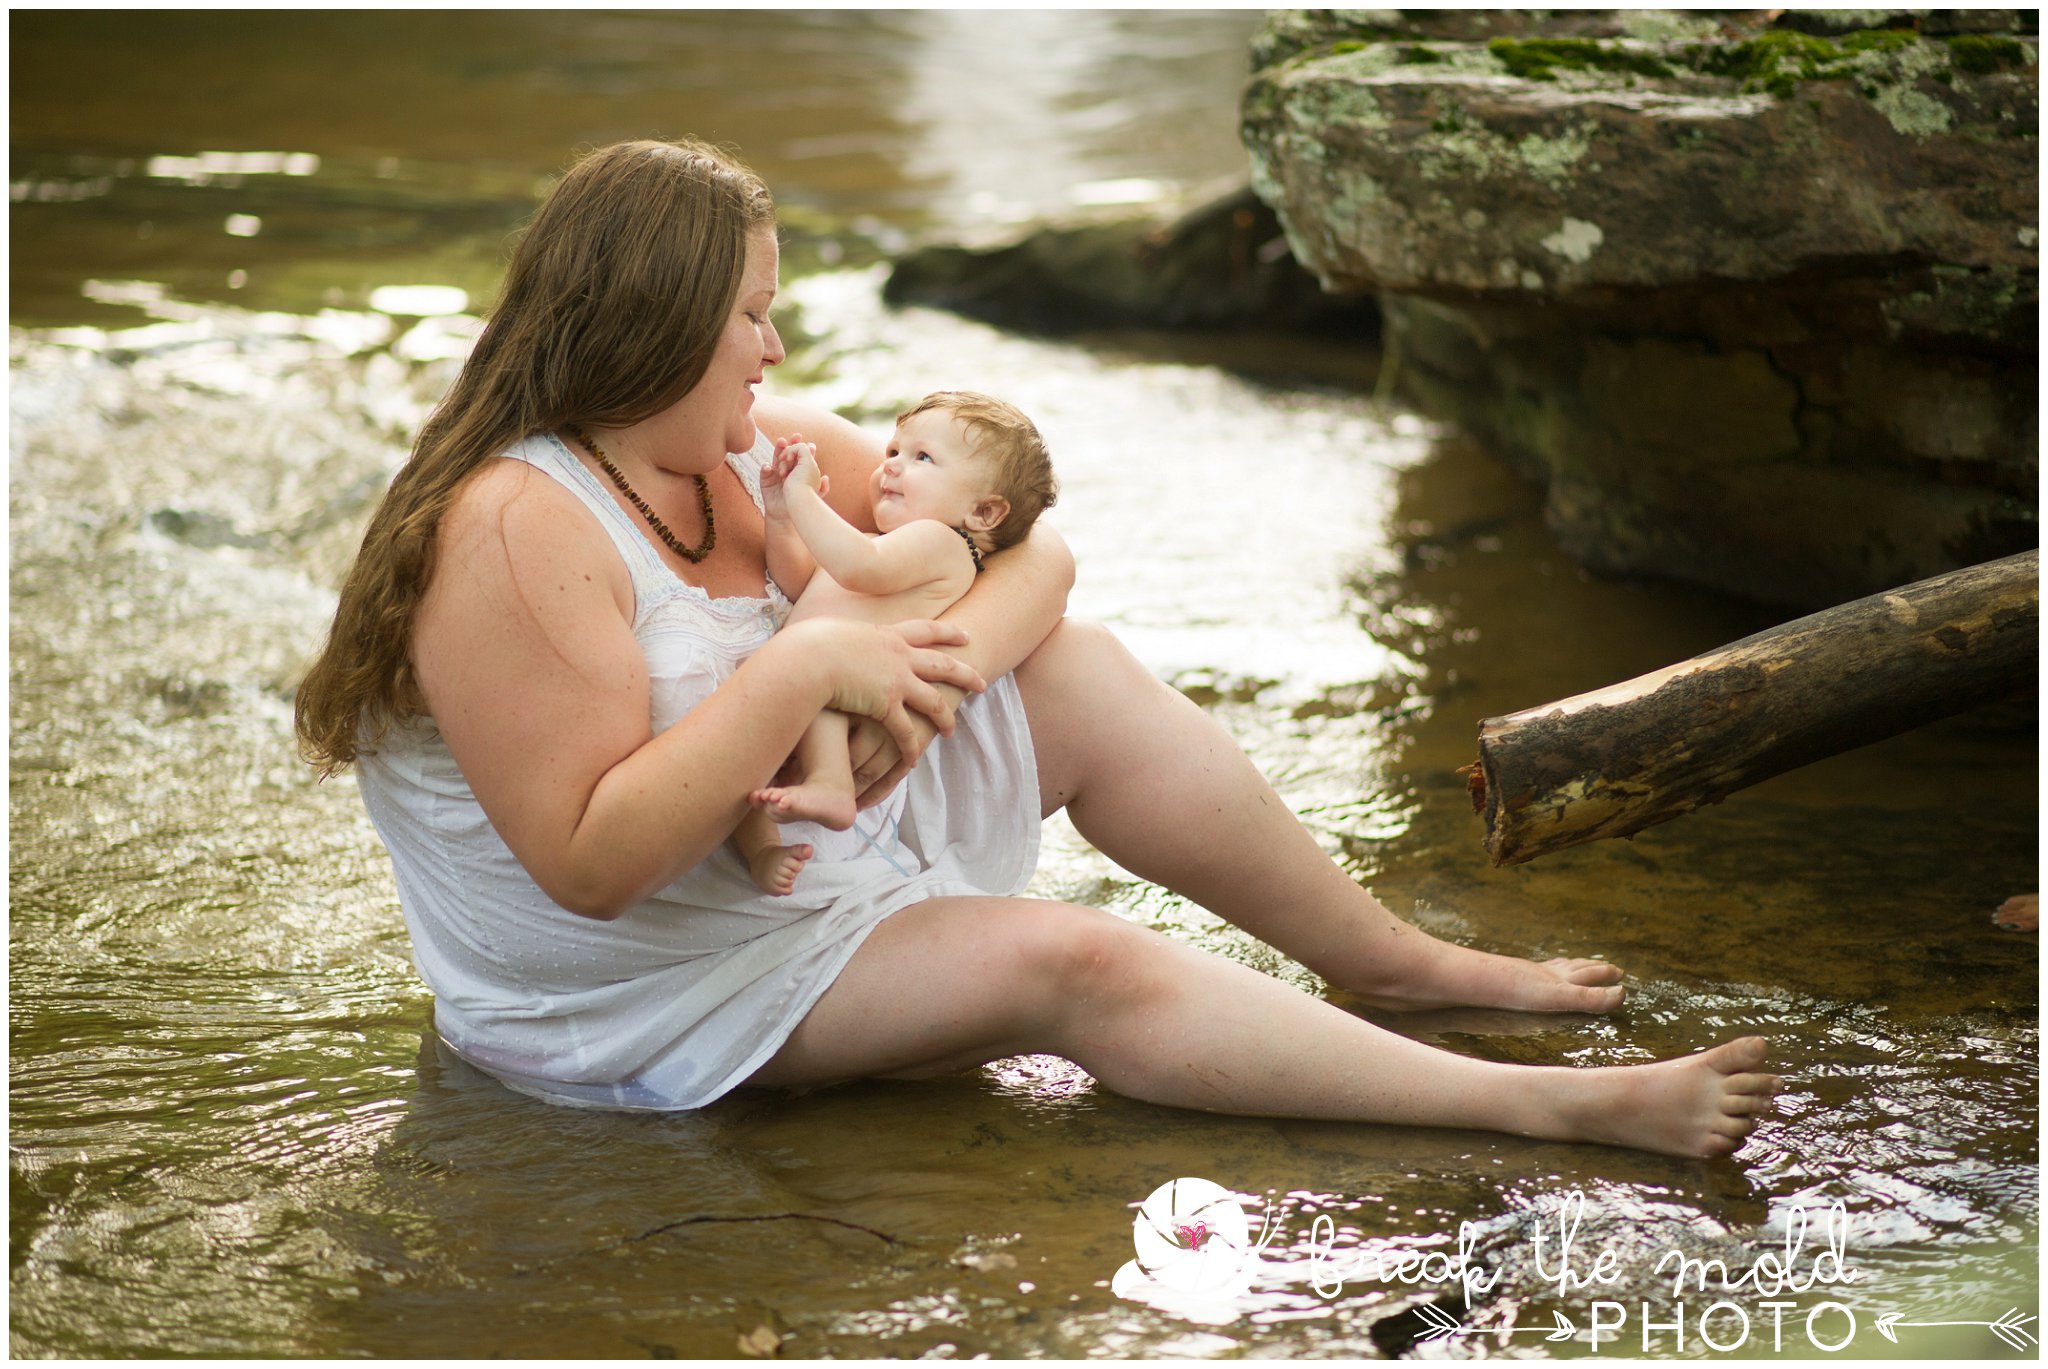 break-the-mold-photo-nursing-mothers-waterfall-women-celebrate-beauty_5417.jpg